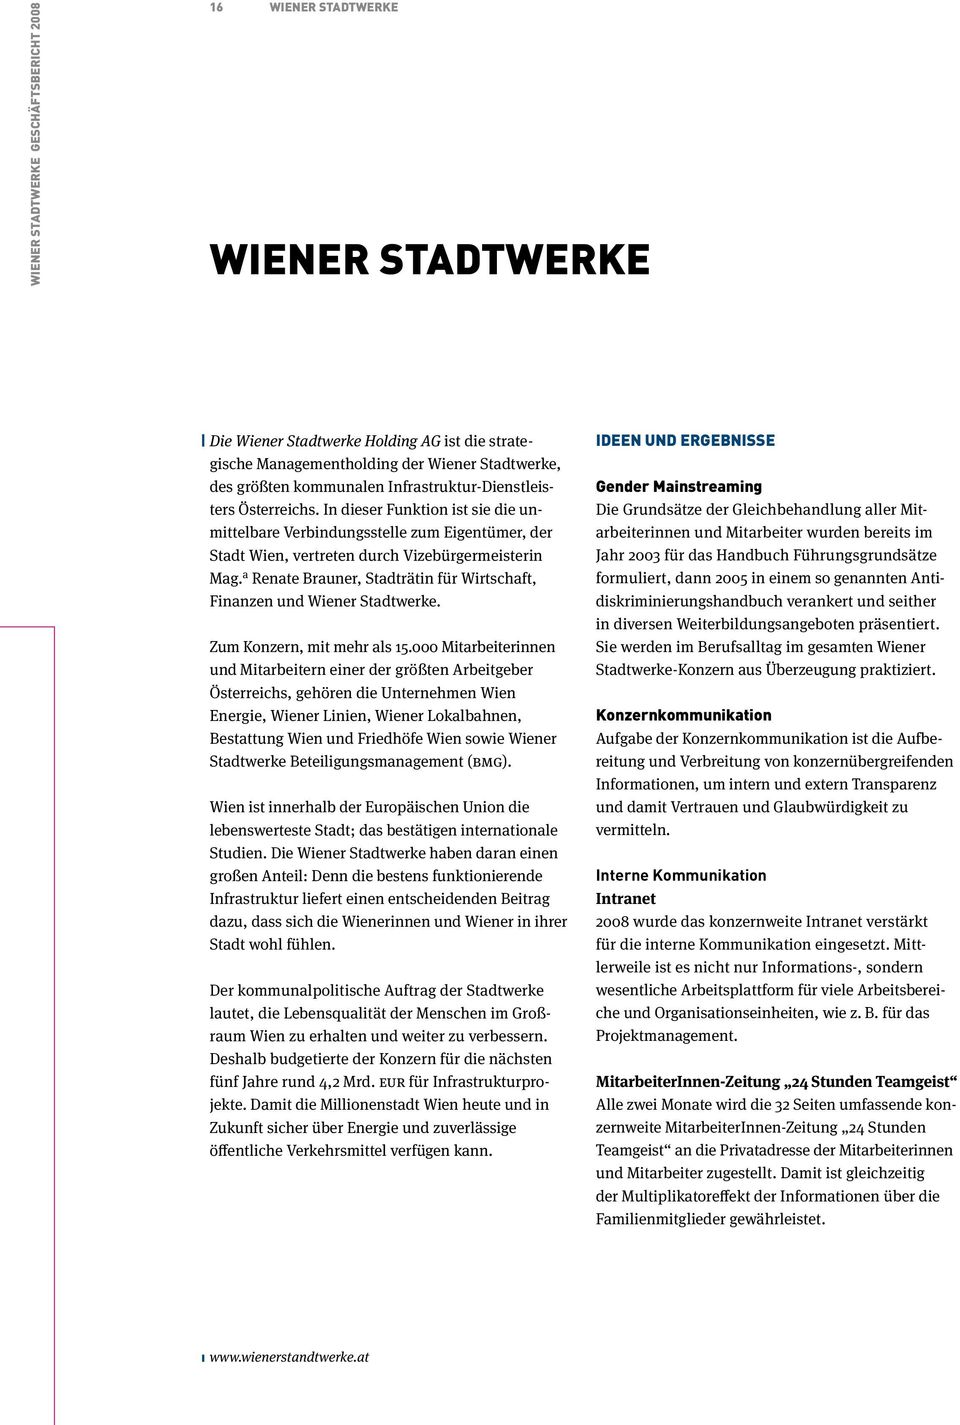 a Renate Brauner, Stadträtin für Wirtschaft, Finanzen und Wiener Stadtwerke. Zum Konzern, mit mehr als 15.